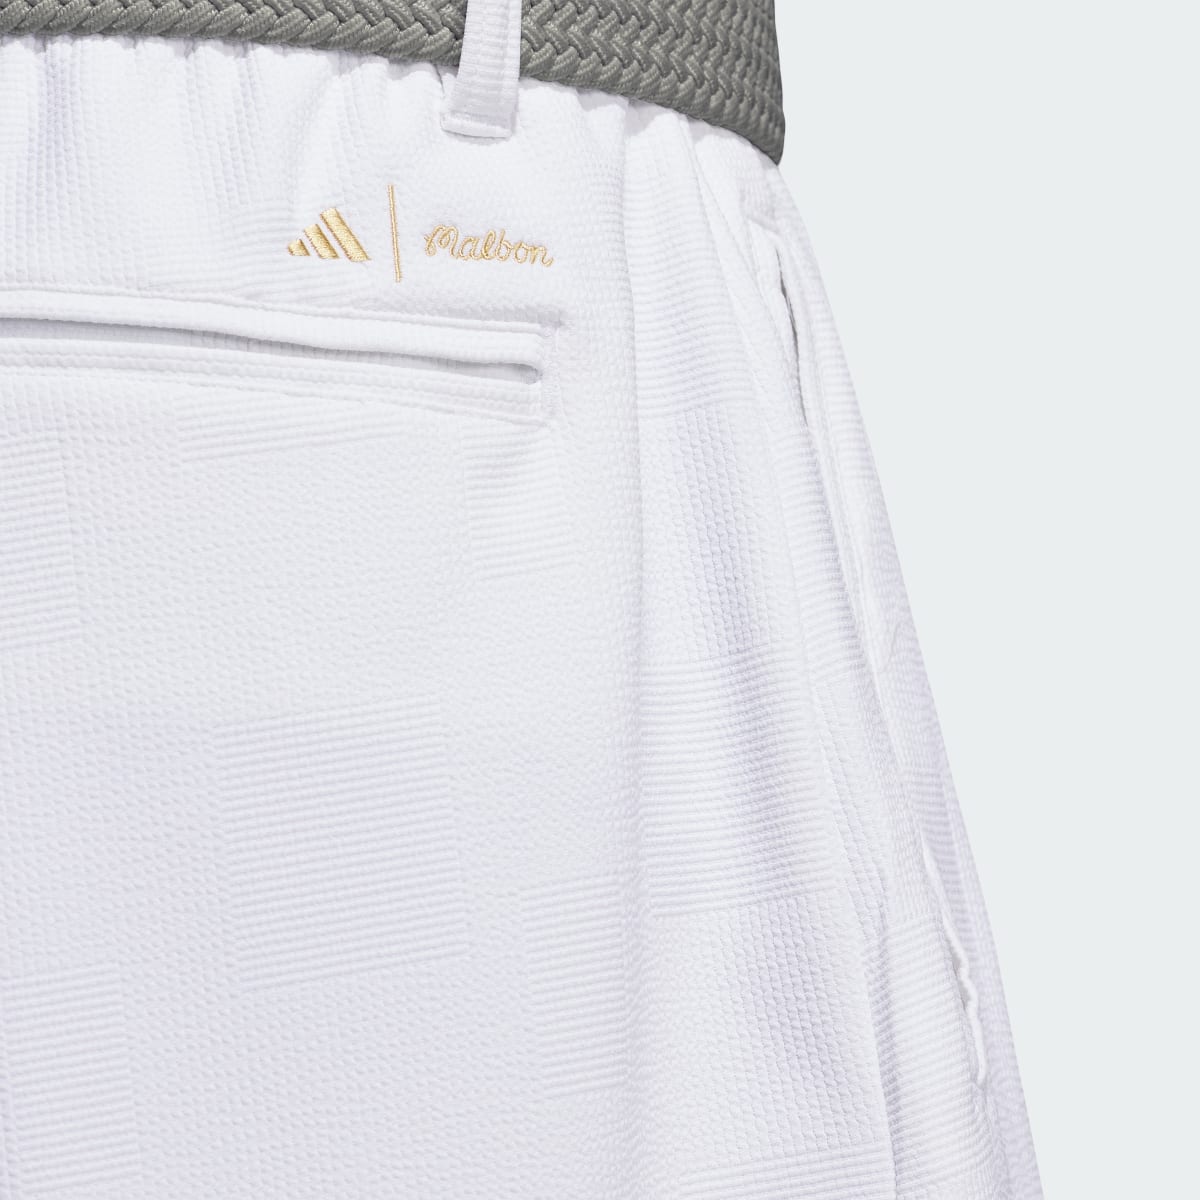 Adidas x Malbon Shorts. 5